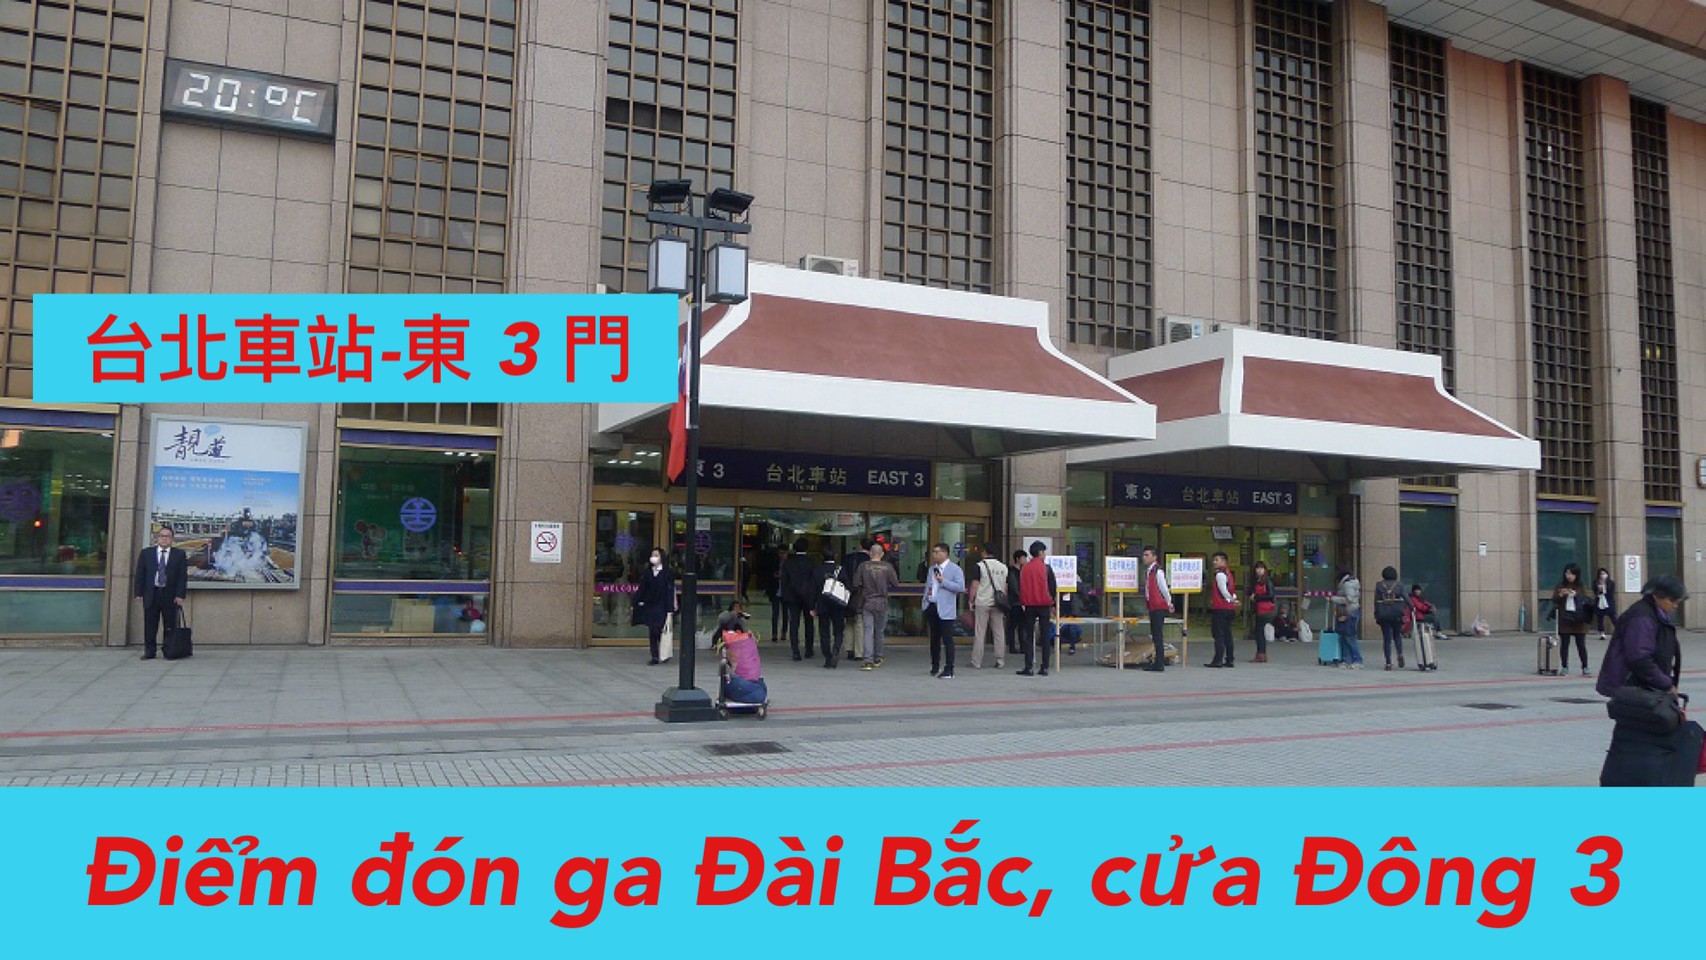 Ngày 1: 07:30 Đón ga Đài Bắc-East 3  台北車站(東三門)